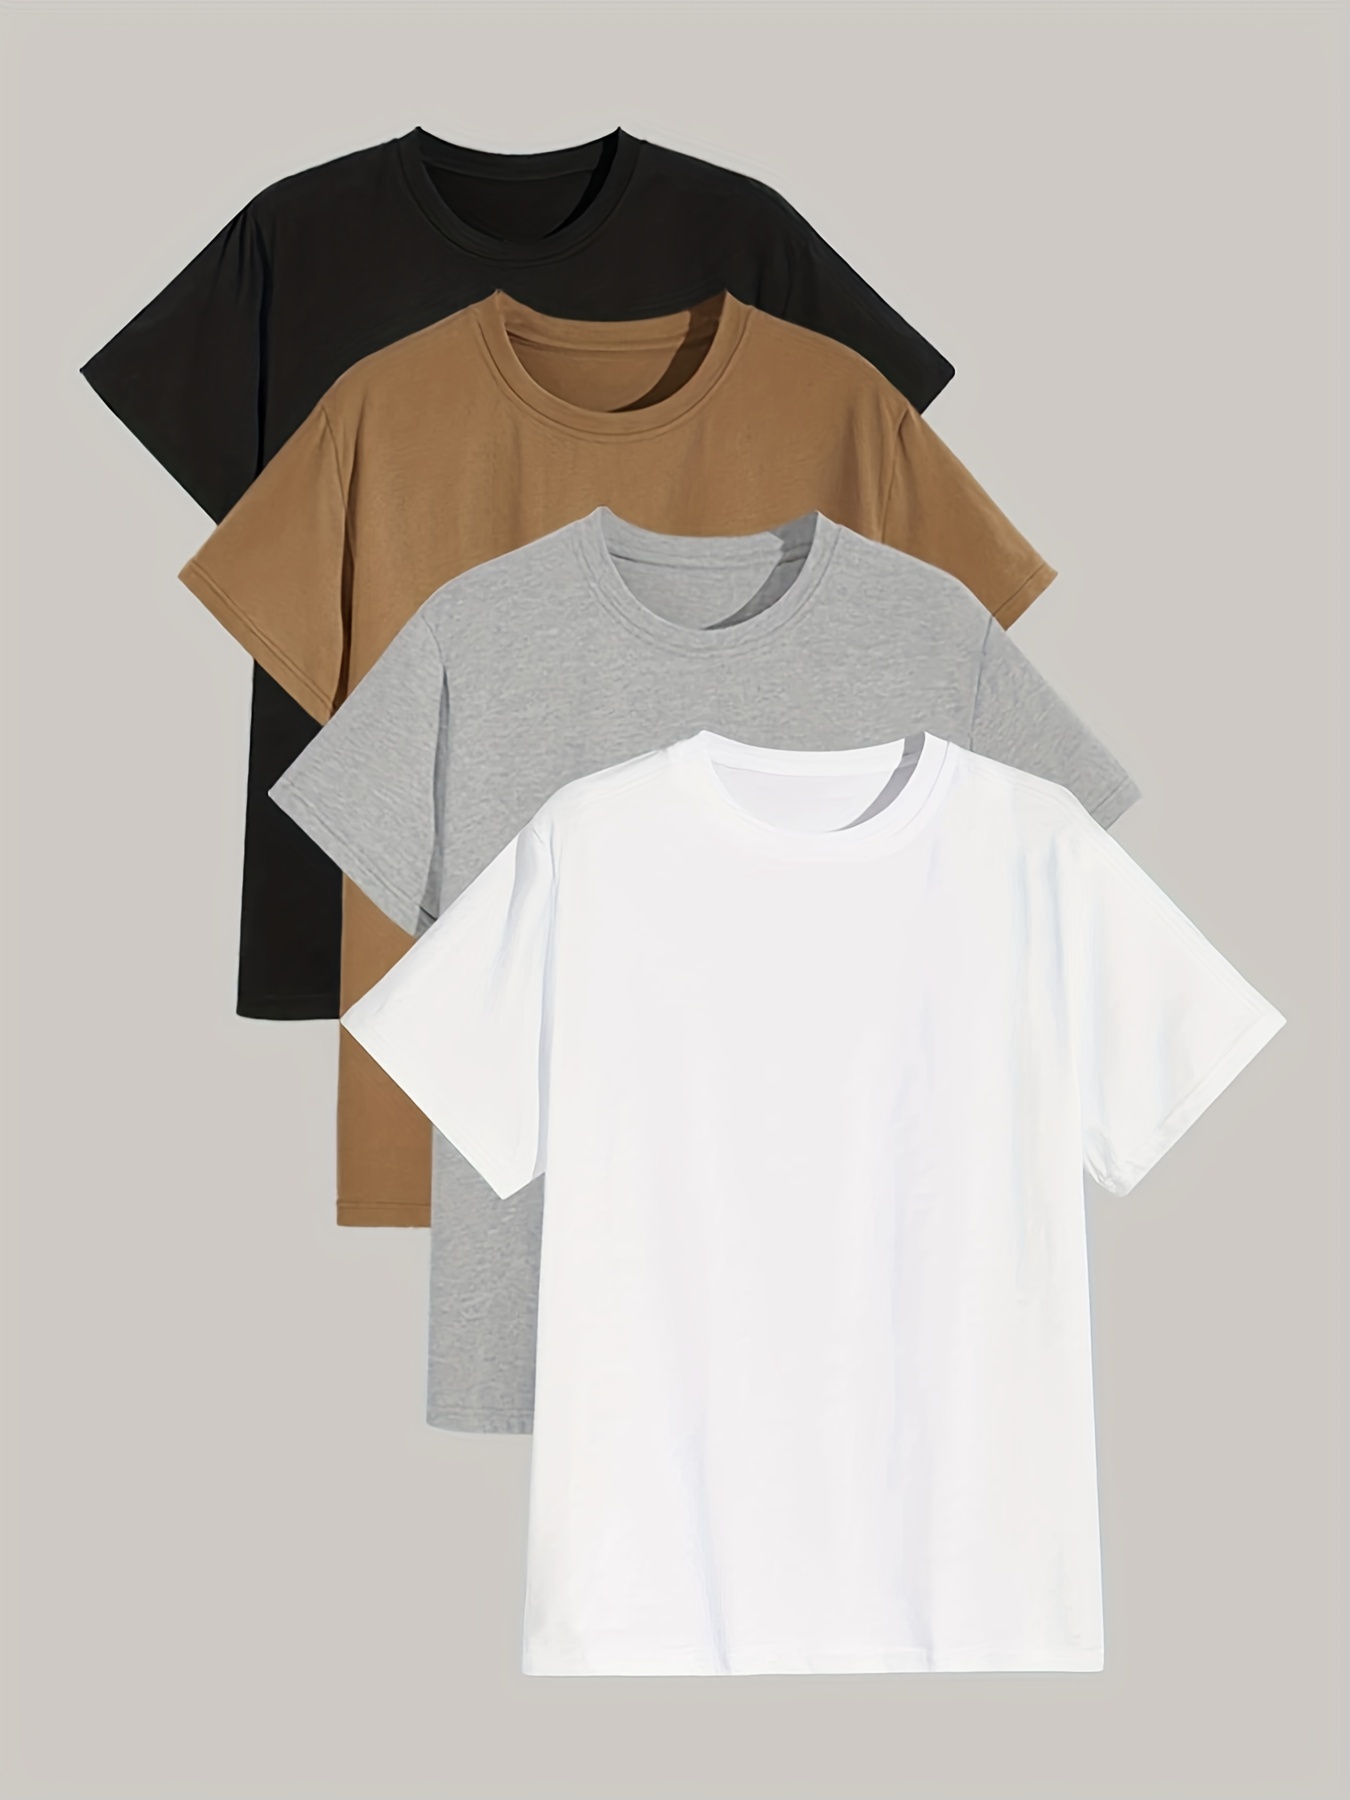 Essentials - Camiseta de manga corta con cuello redondo para hombre,  paquete de 2 unidades